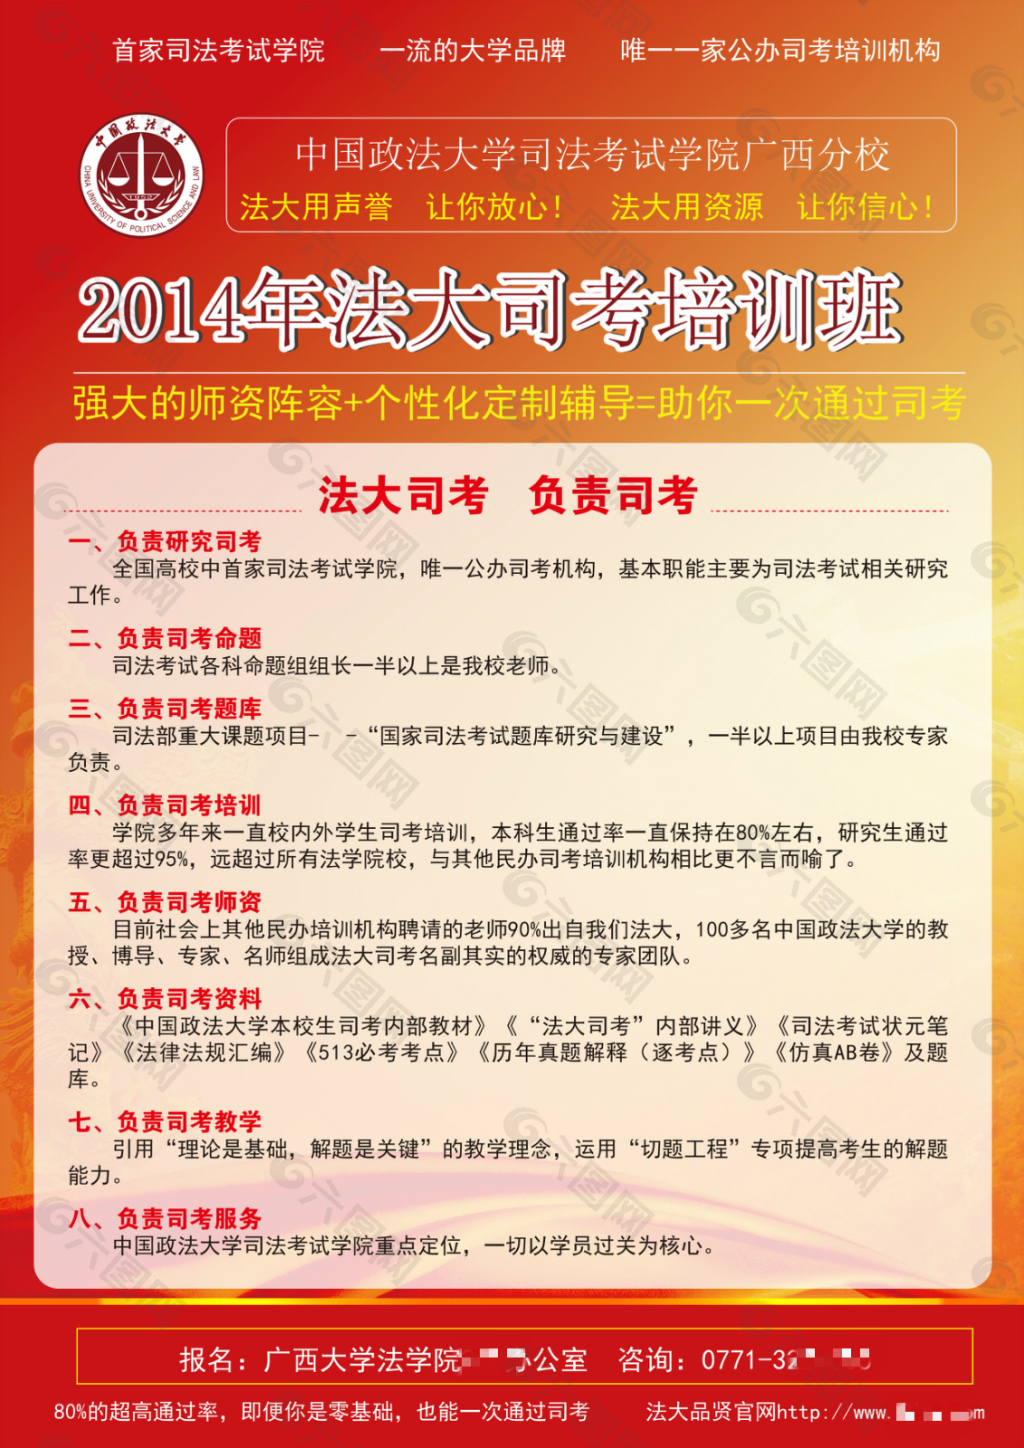 2014年中国政法大学司法考试培训传单